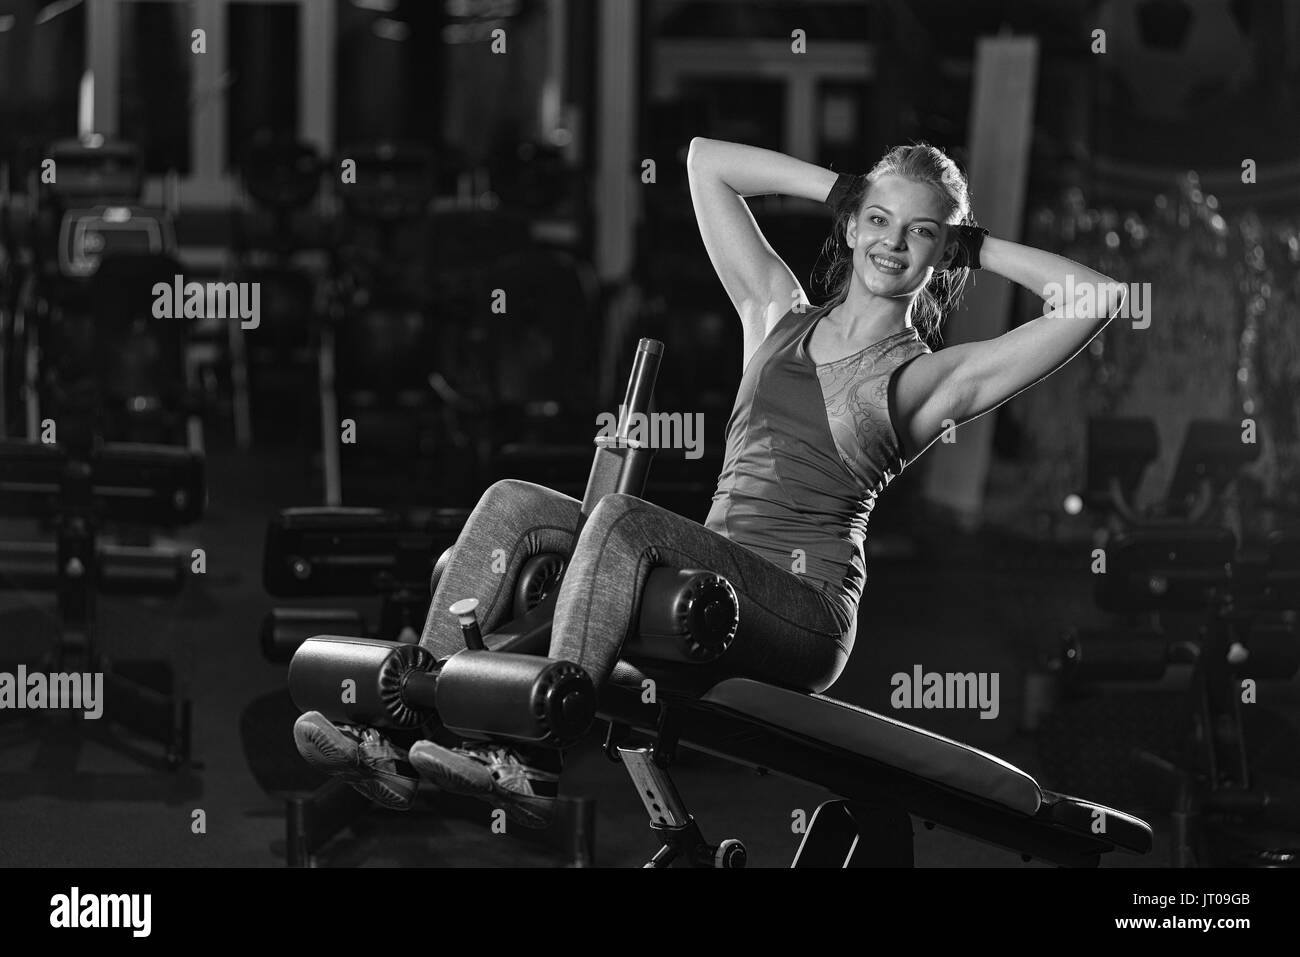 https://c8.alamy.com/compes/jt09gb/mujer-haciendo-fuerza-ejercicios-para-los-musculos-abdominales-en-el-gimnasio-deportivo-cubierto-chica-haciendo-yoga-estiramientos-despues-de-correr-modelo-de-fitness-sport-club-en-la-oscuridad-b-jt09gb.jpg